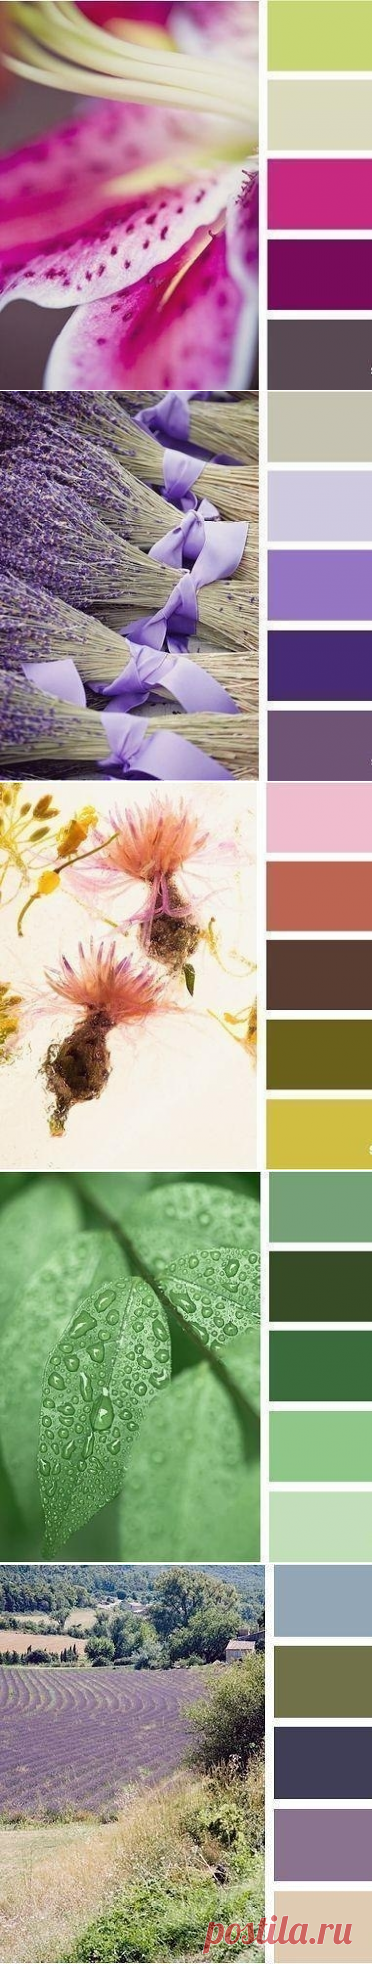 Природные сочетания цветов - Дизайн интерьеров | Идеи вашего дома | Lodgers